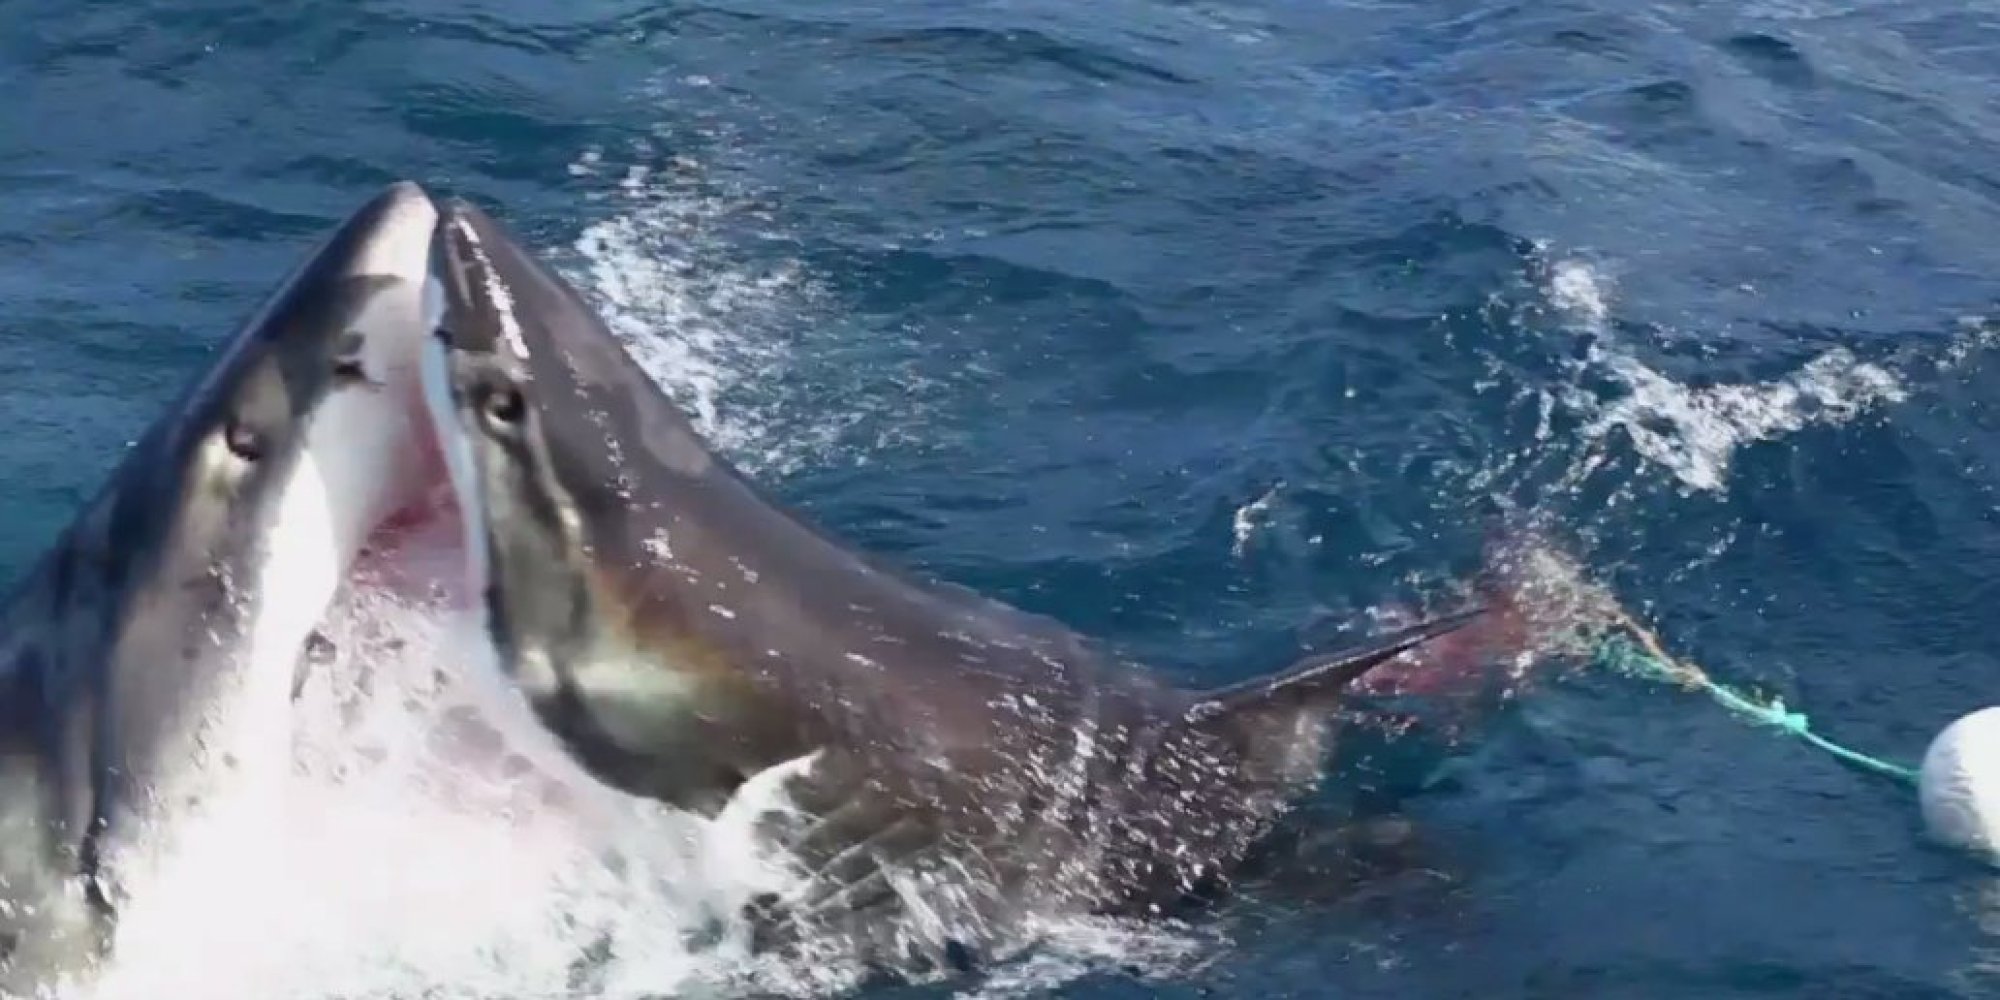 6公尺的大白鲨正在吃水面上的鱼饵,忽然另外一只体型更大的大白鲨冲了